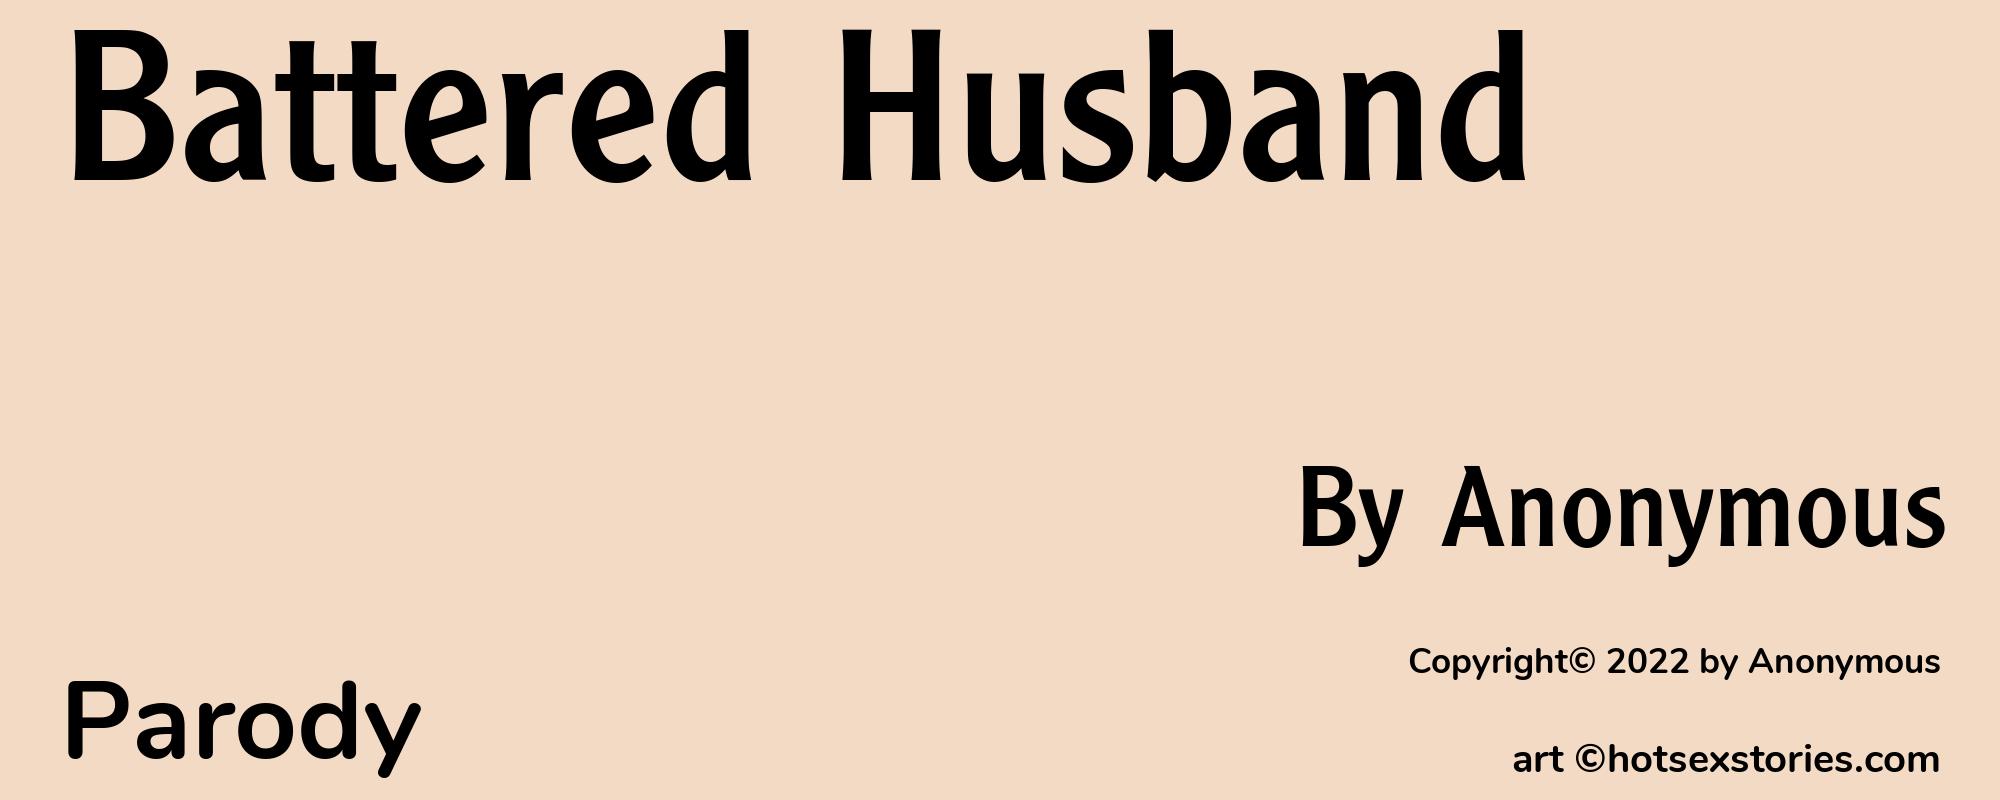 Battered Husband - Cover